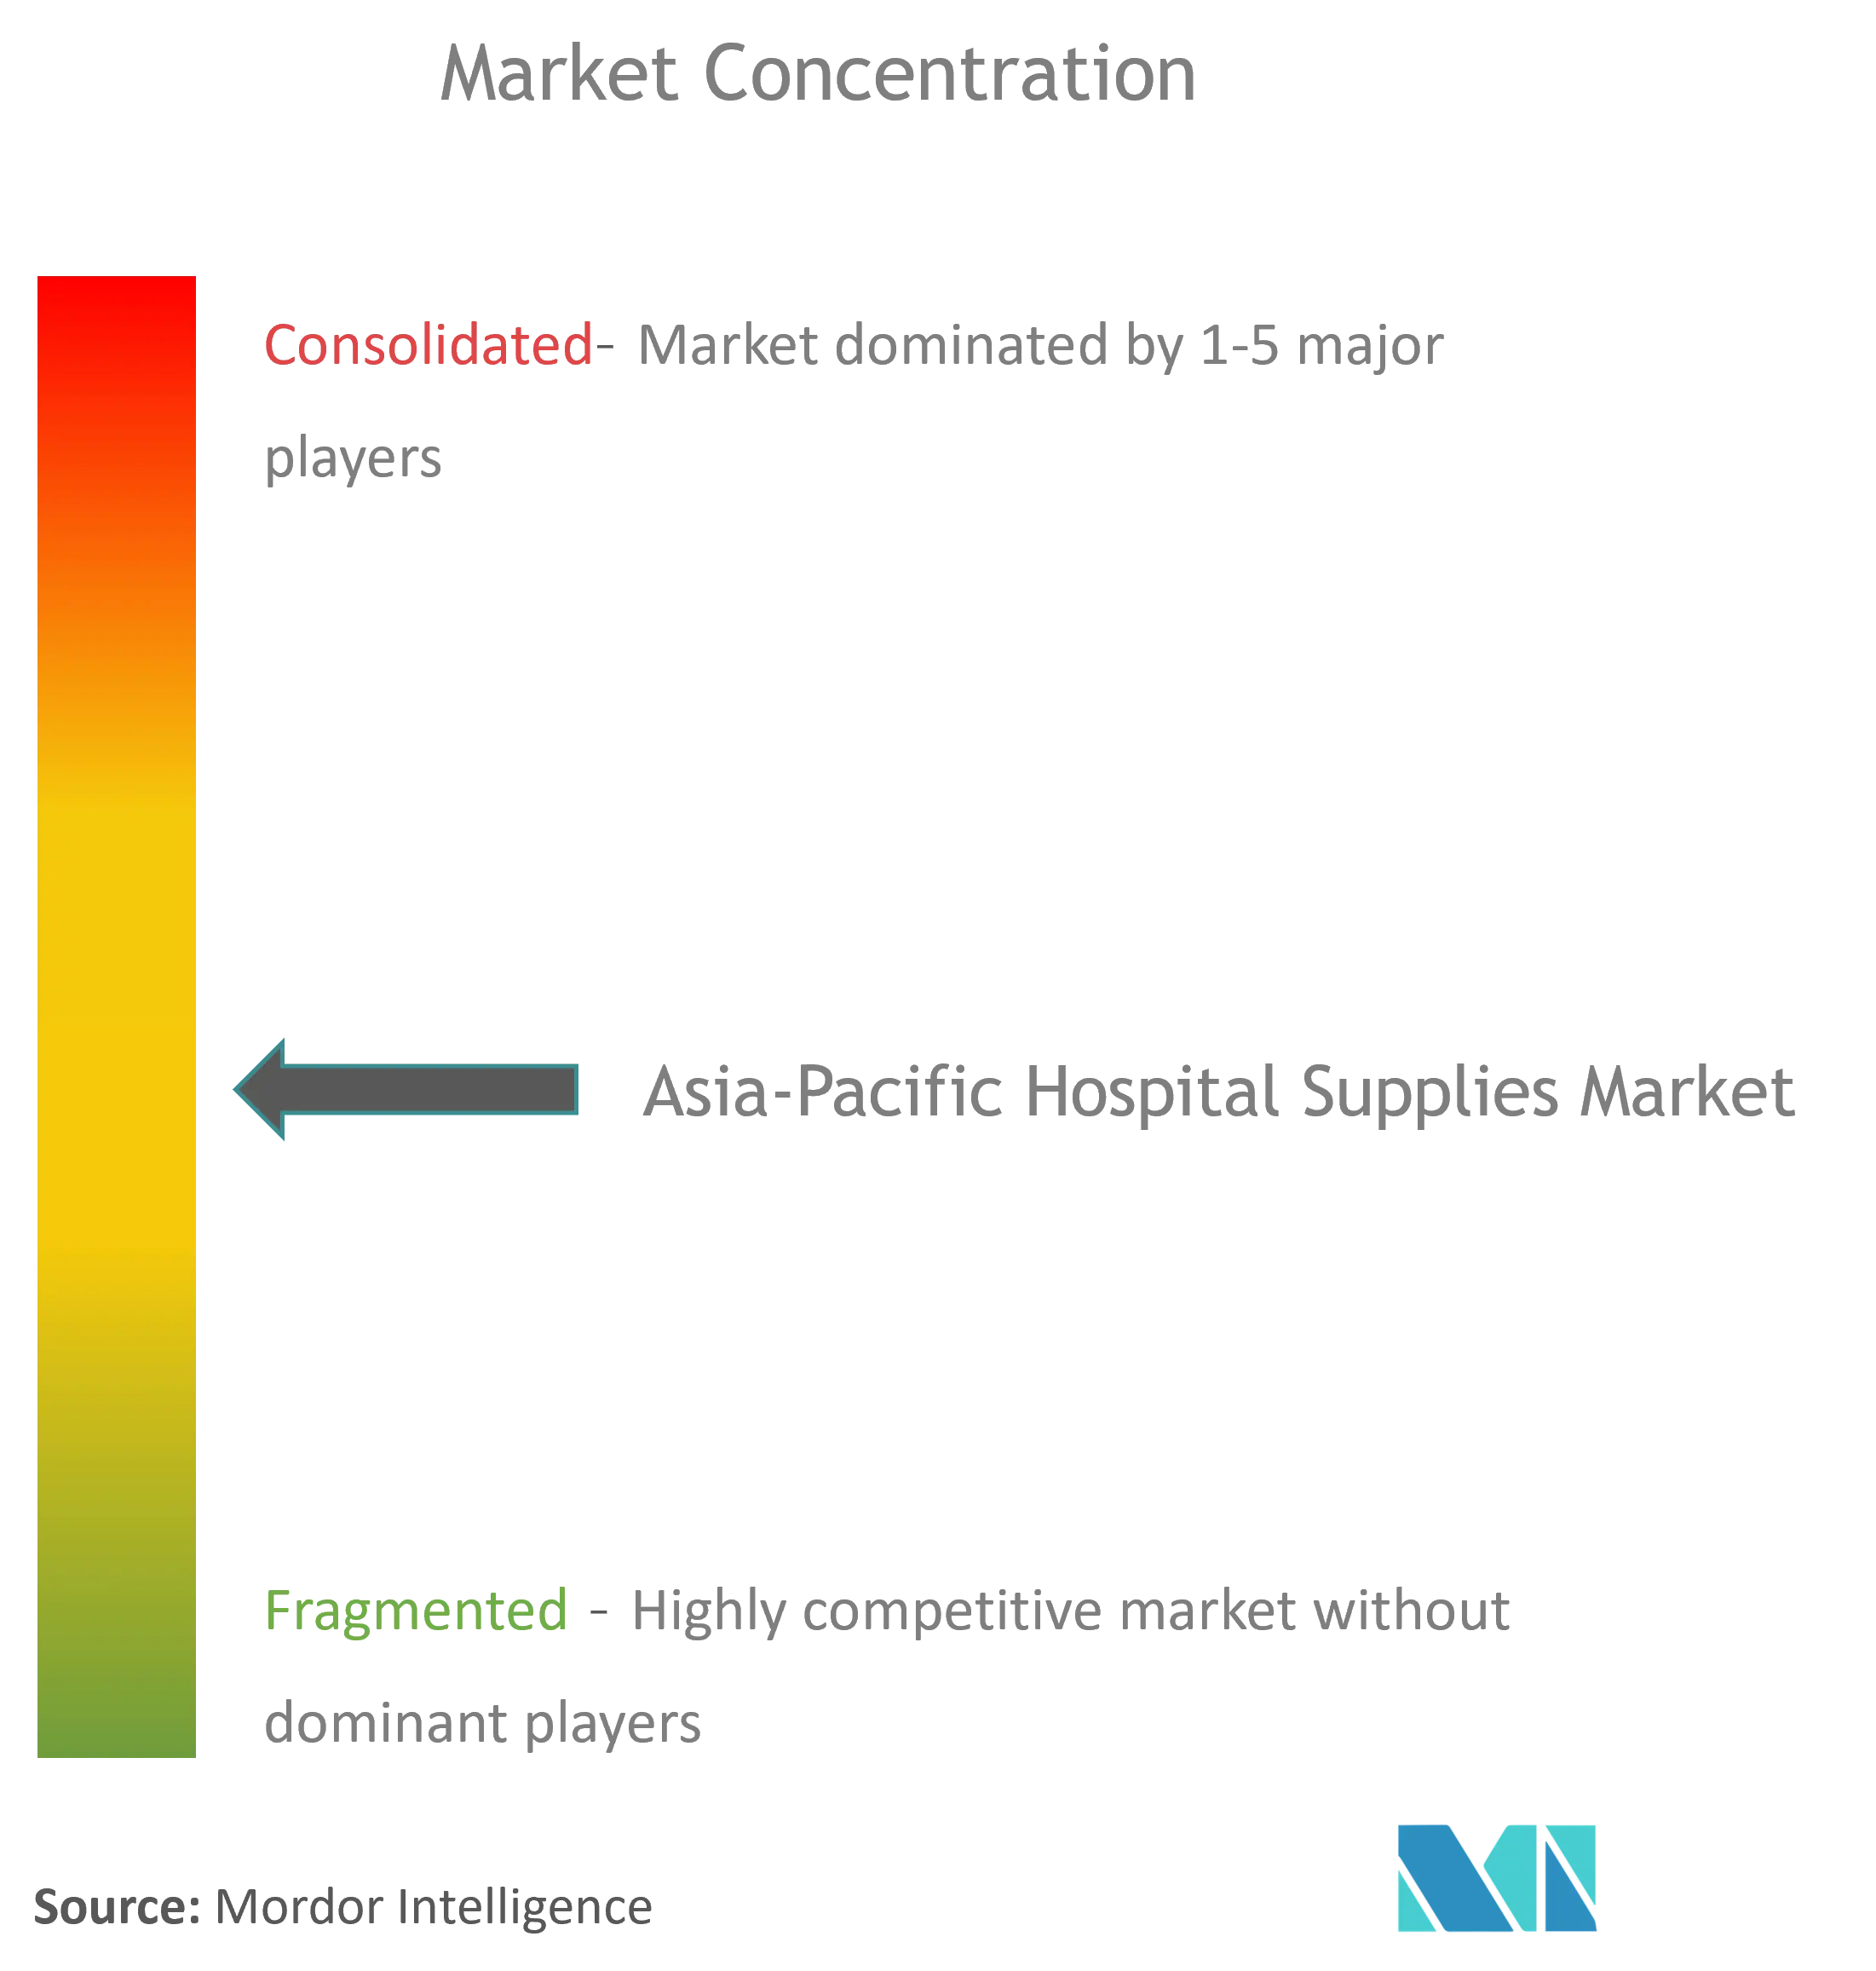 Concentration du marché des fournitures hospitalières en Asie-Pacifique